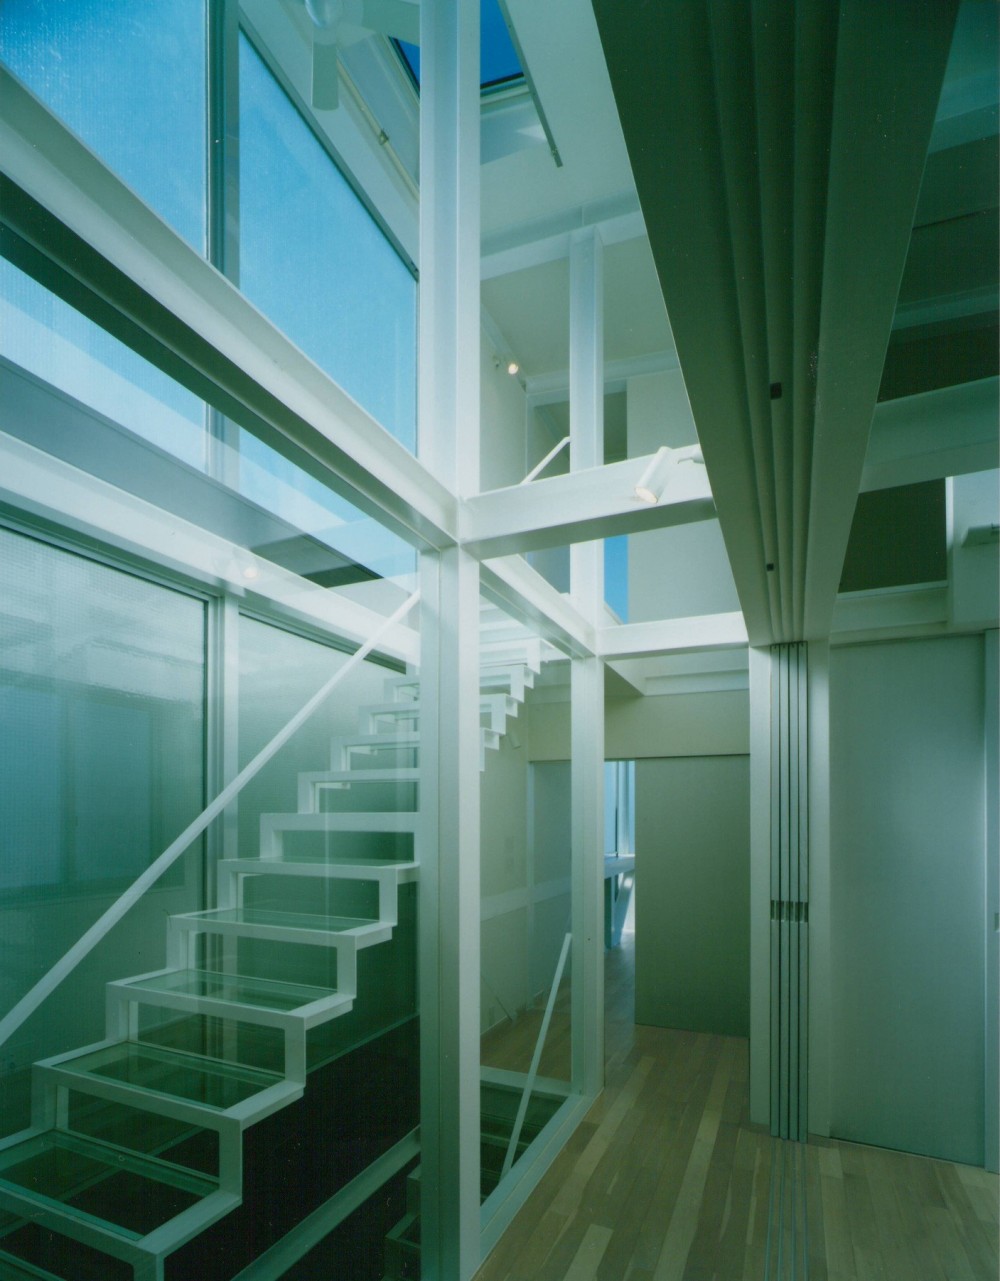 原空間工作所「ガラス階段の家～透明ガラス階段が家中に光をとどける家～」